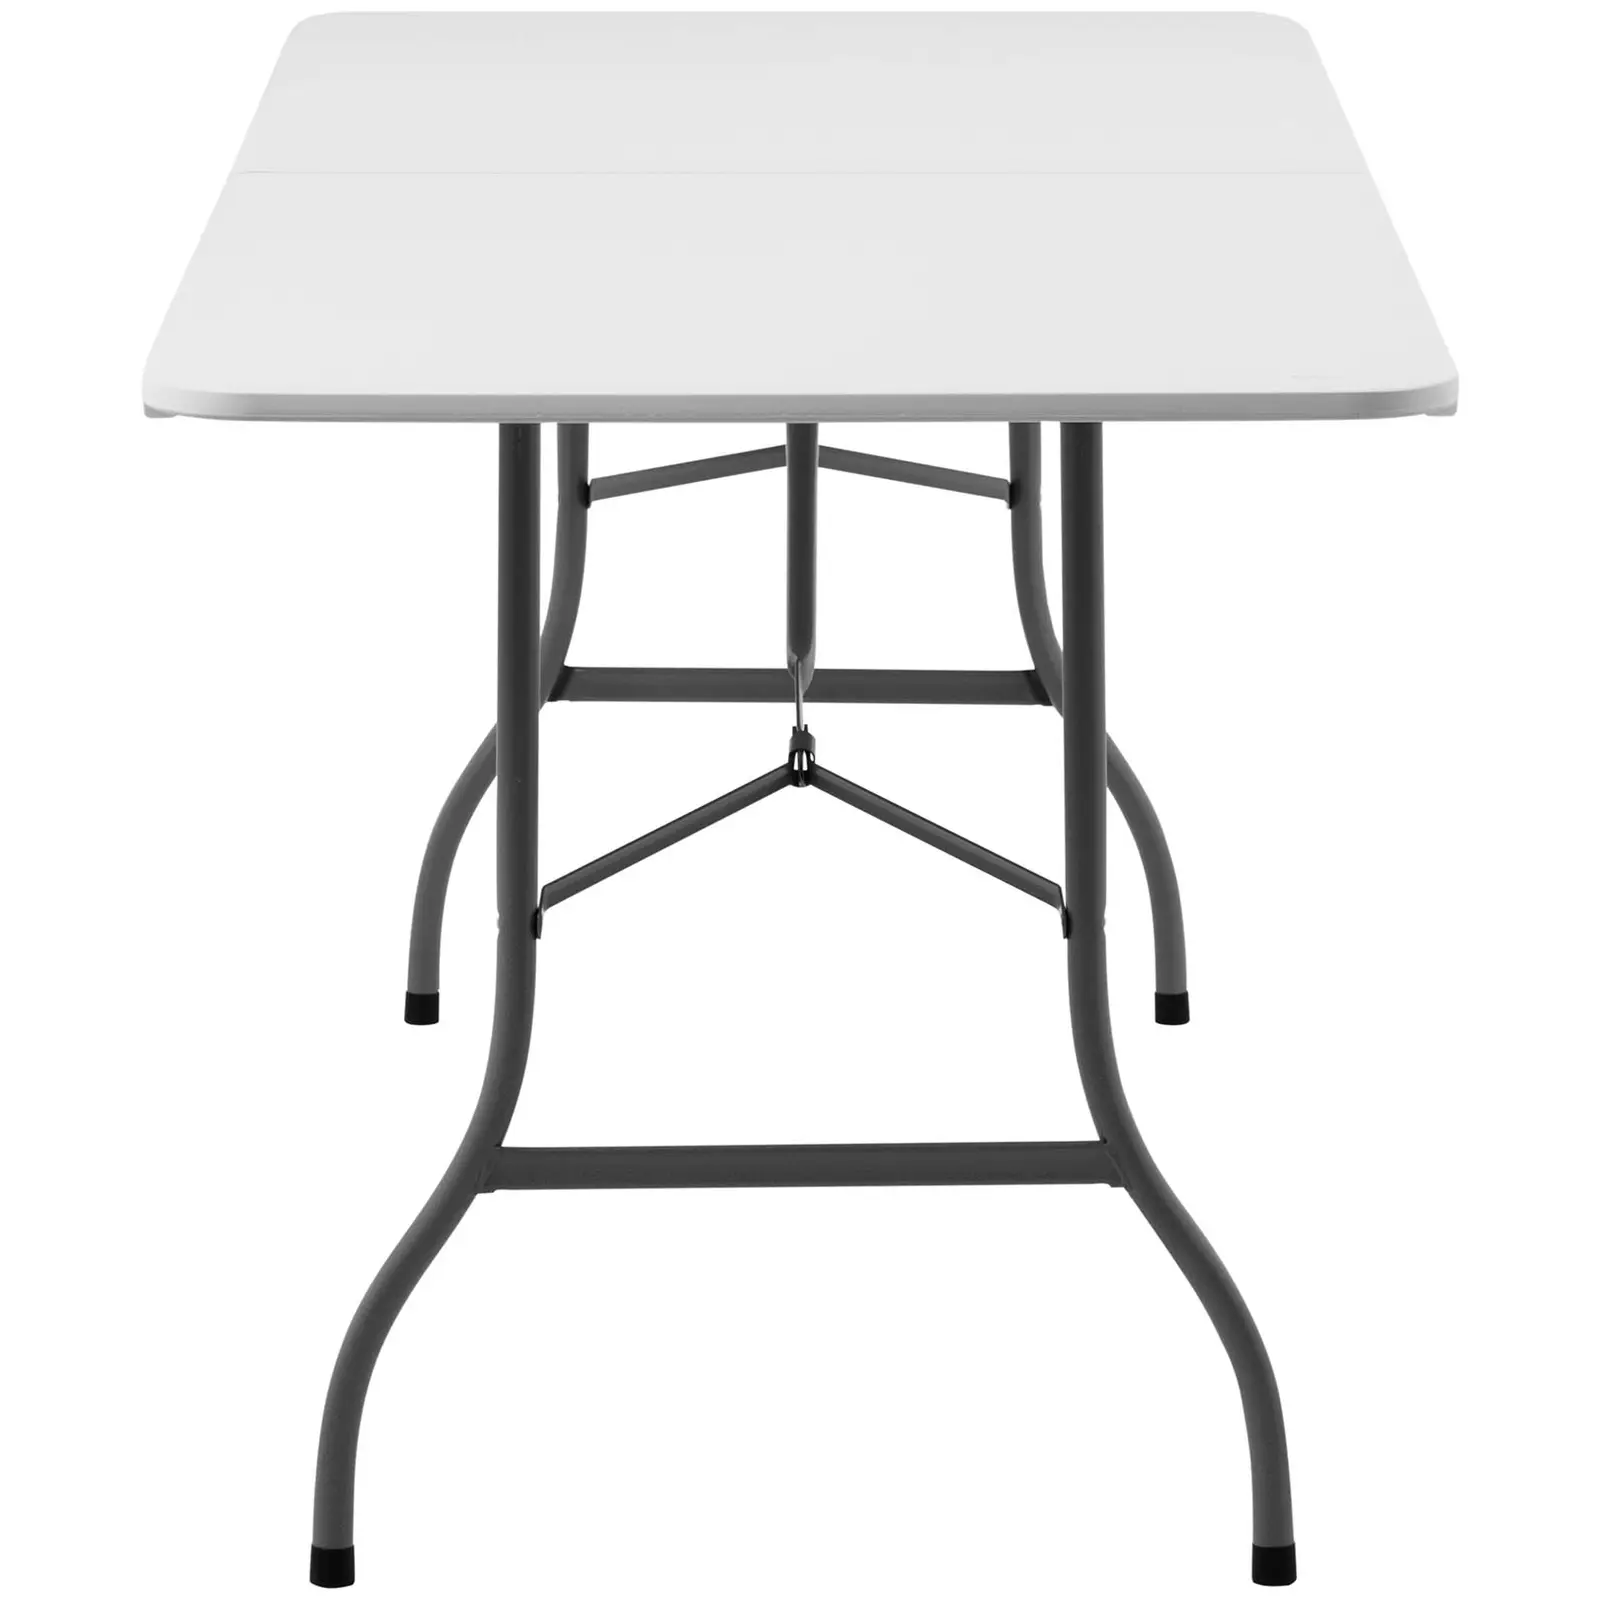 Table pliante - 1 800 x 750 x 740 mm - Royal Catering - 150 kg - Intérieur/extérieur - Whitehe